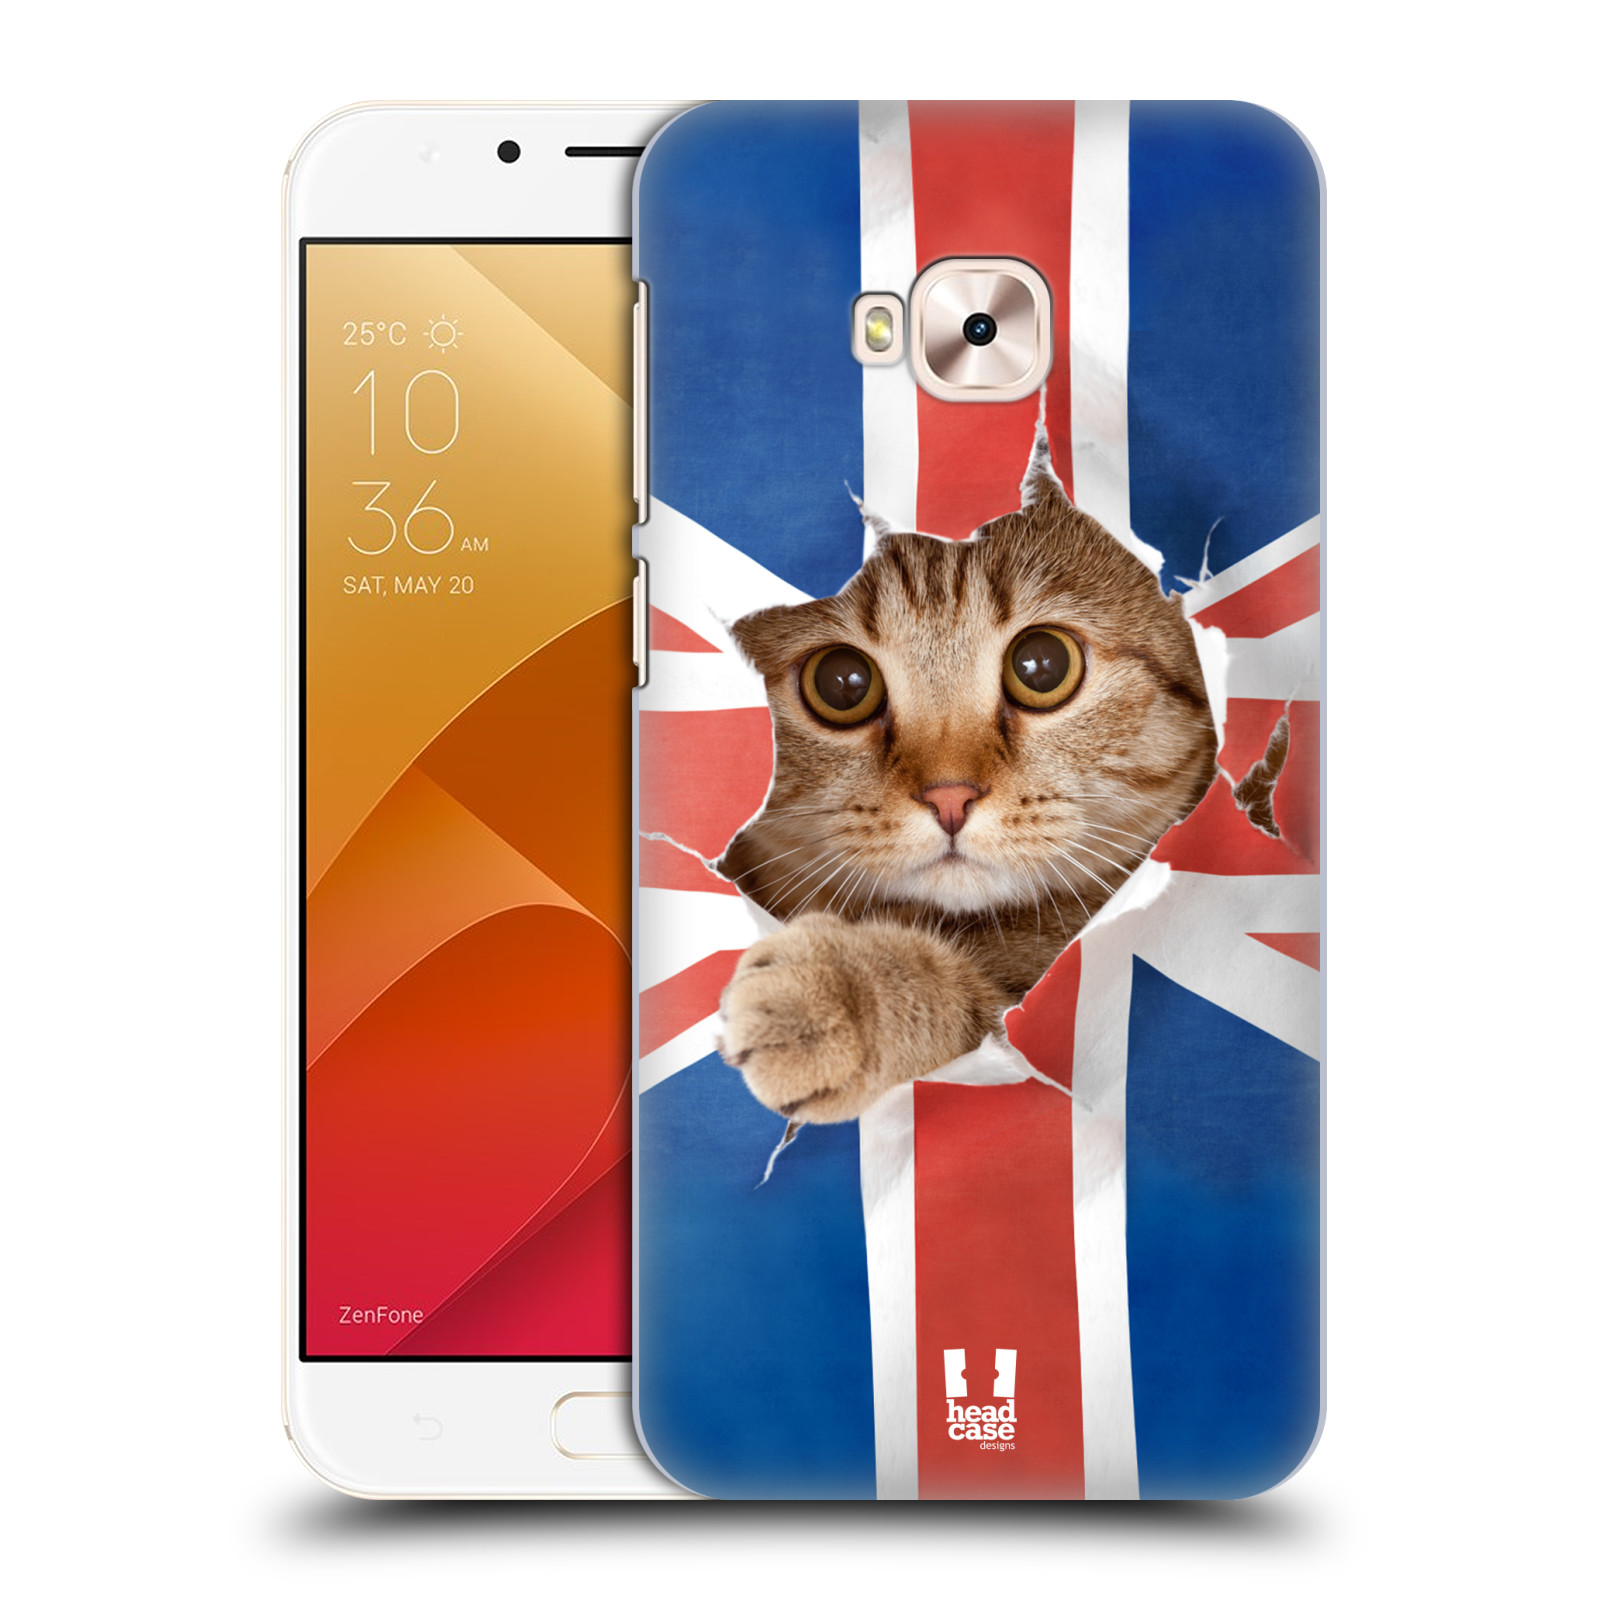 HEAD CASE plastový obal na mobil Asus Zenfone 4 Selfie Pro ZD552KL vzor Legrační zvířátka kočička a Velká Británie vlajka